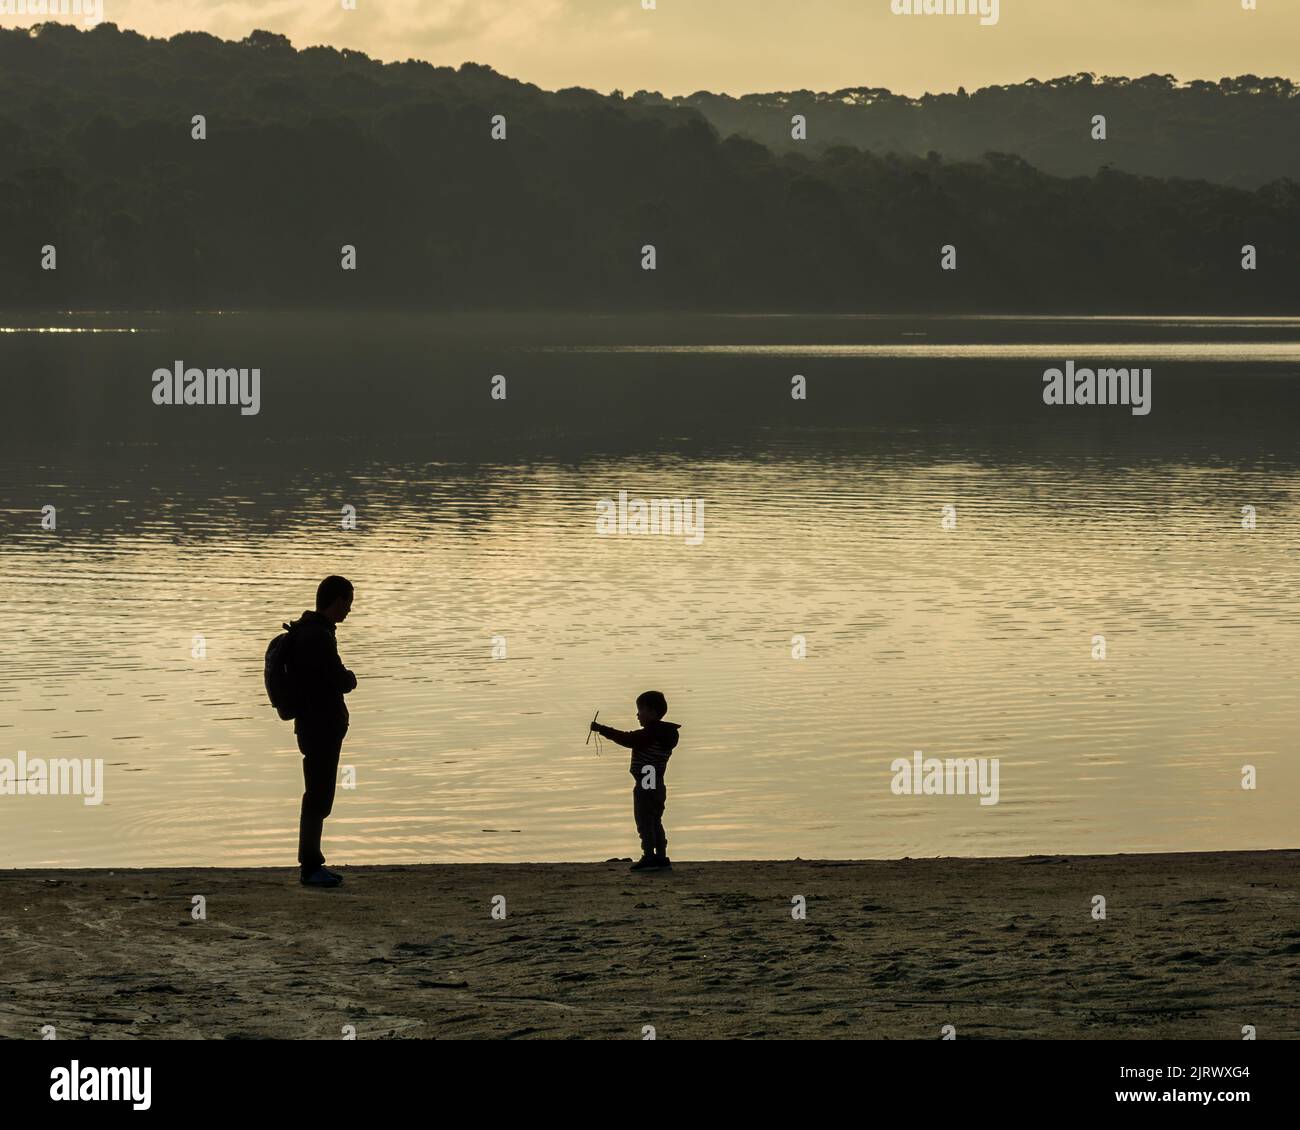 Vater und Sohn verbinden Familienbeziehung bei Sonnenuntergang auf einem See, Silhouette symbolisches Foto Stockfoto